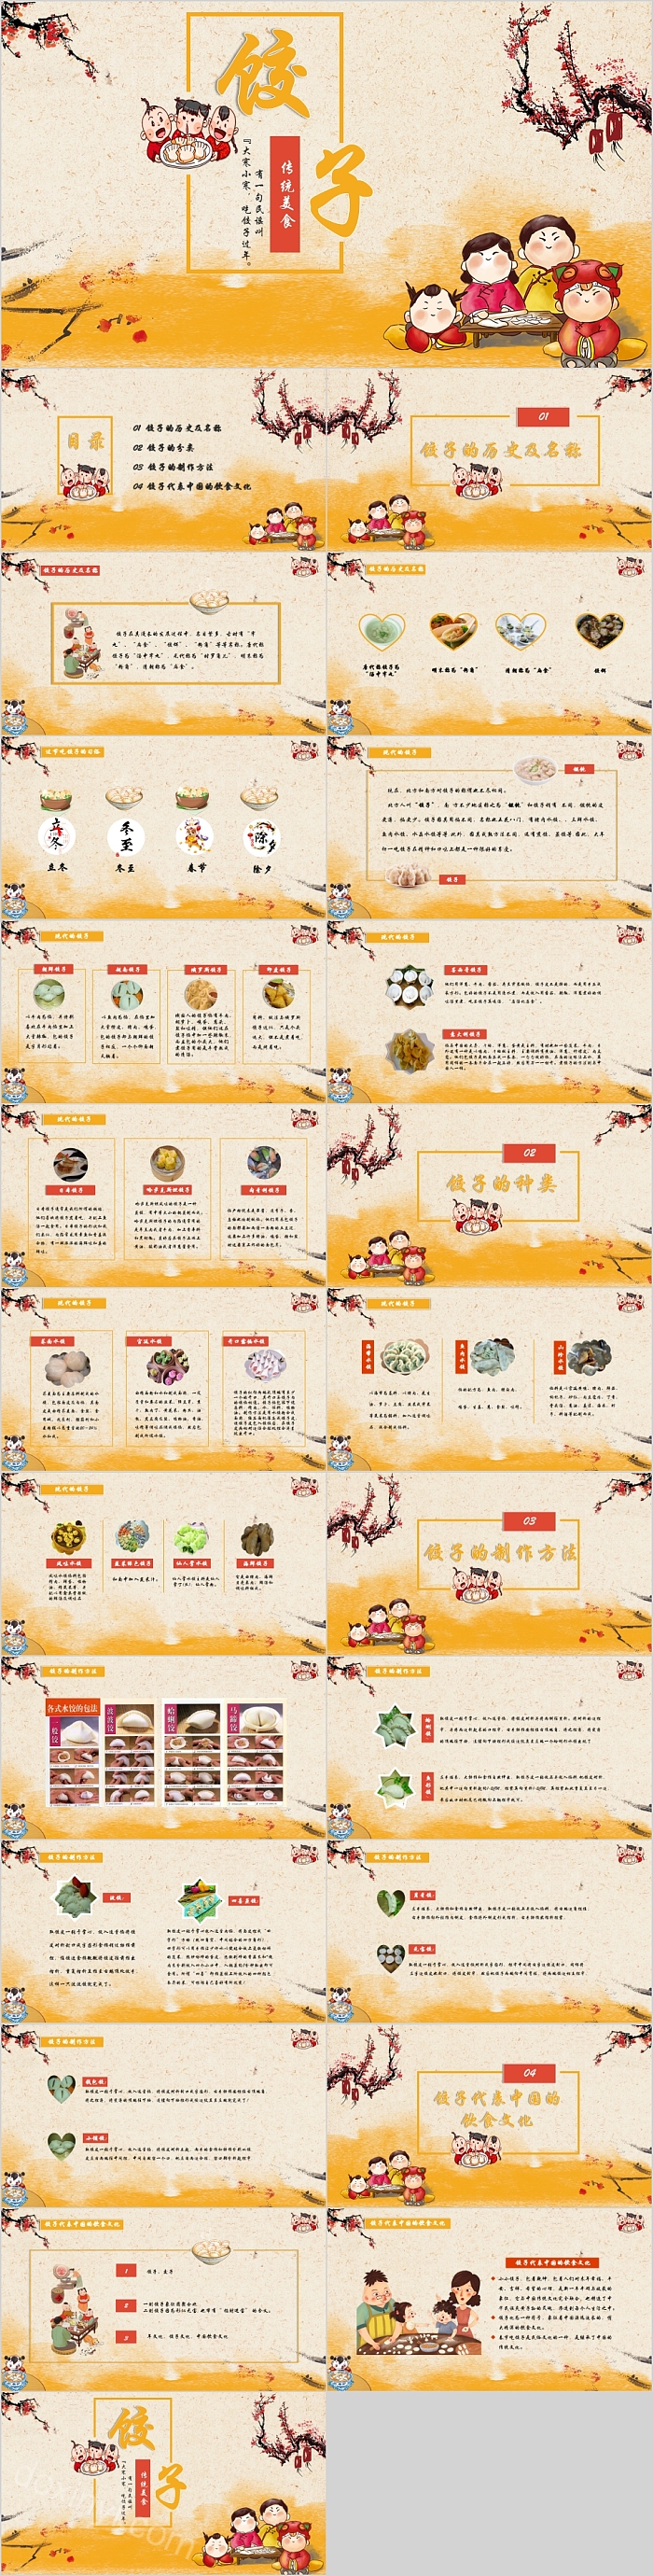 卡通传统美食饺子主题教育